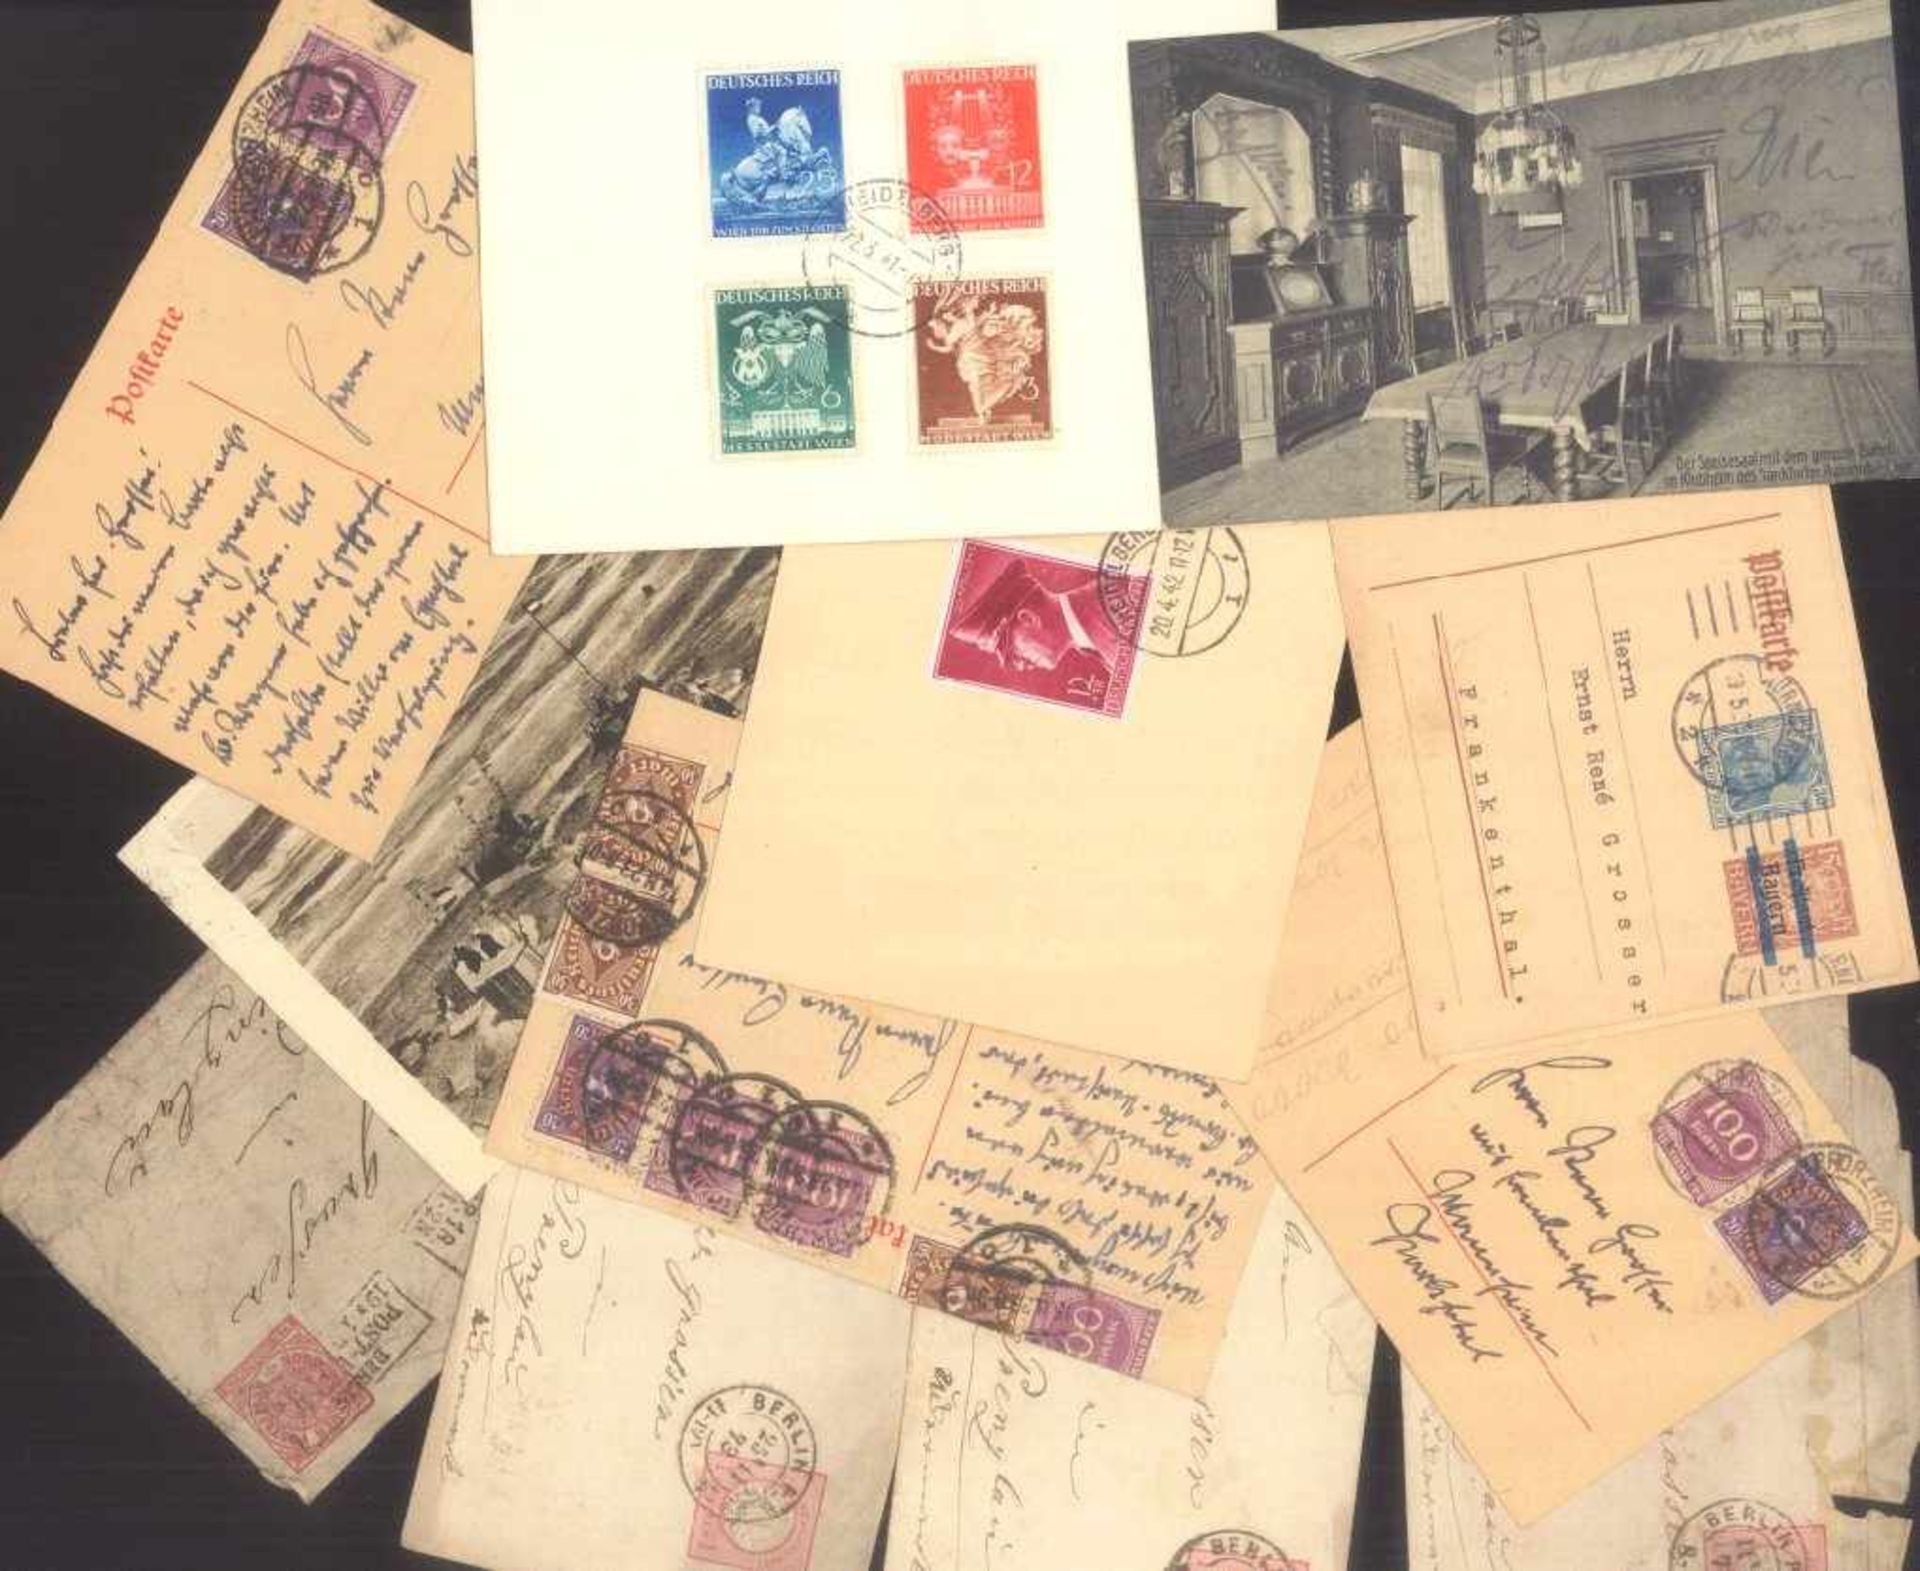 FRANKENTHALER NACHLASSuriger Nachlass mit Briefmarken und Belegen. Dabei DeutschesReich, altes - Bild 33 aus 46